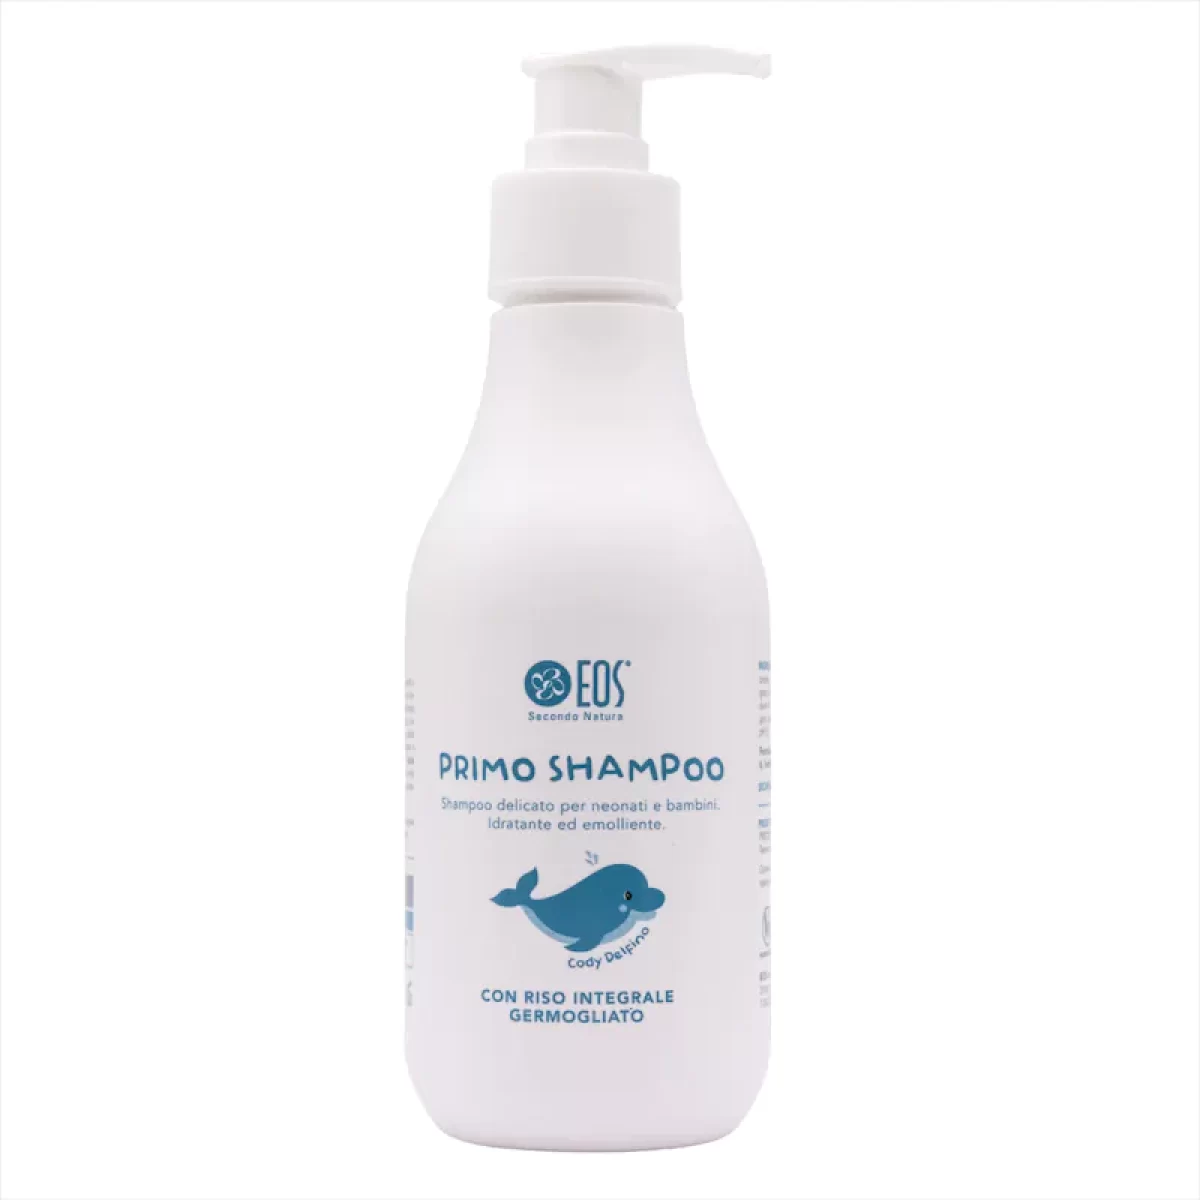 Primo Shampoo Detergente Delicato Neonati e Bambini 200ml – Eos